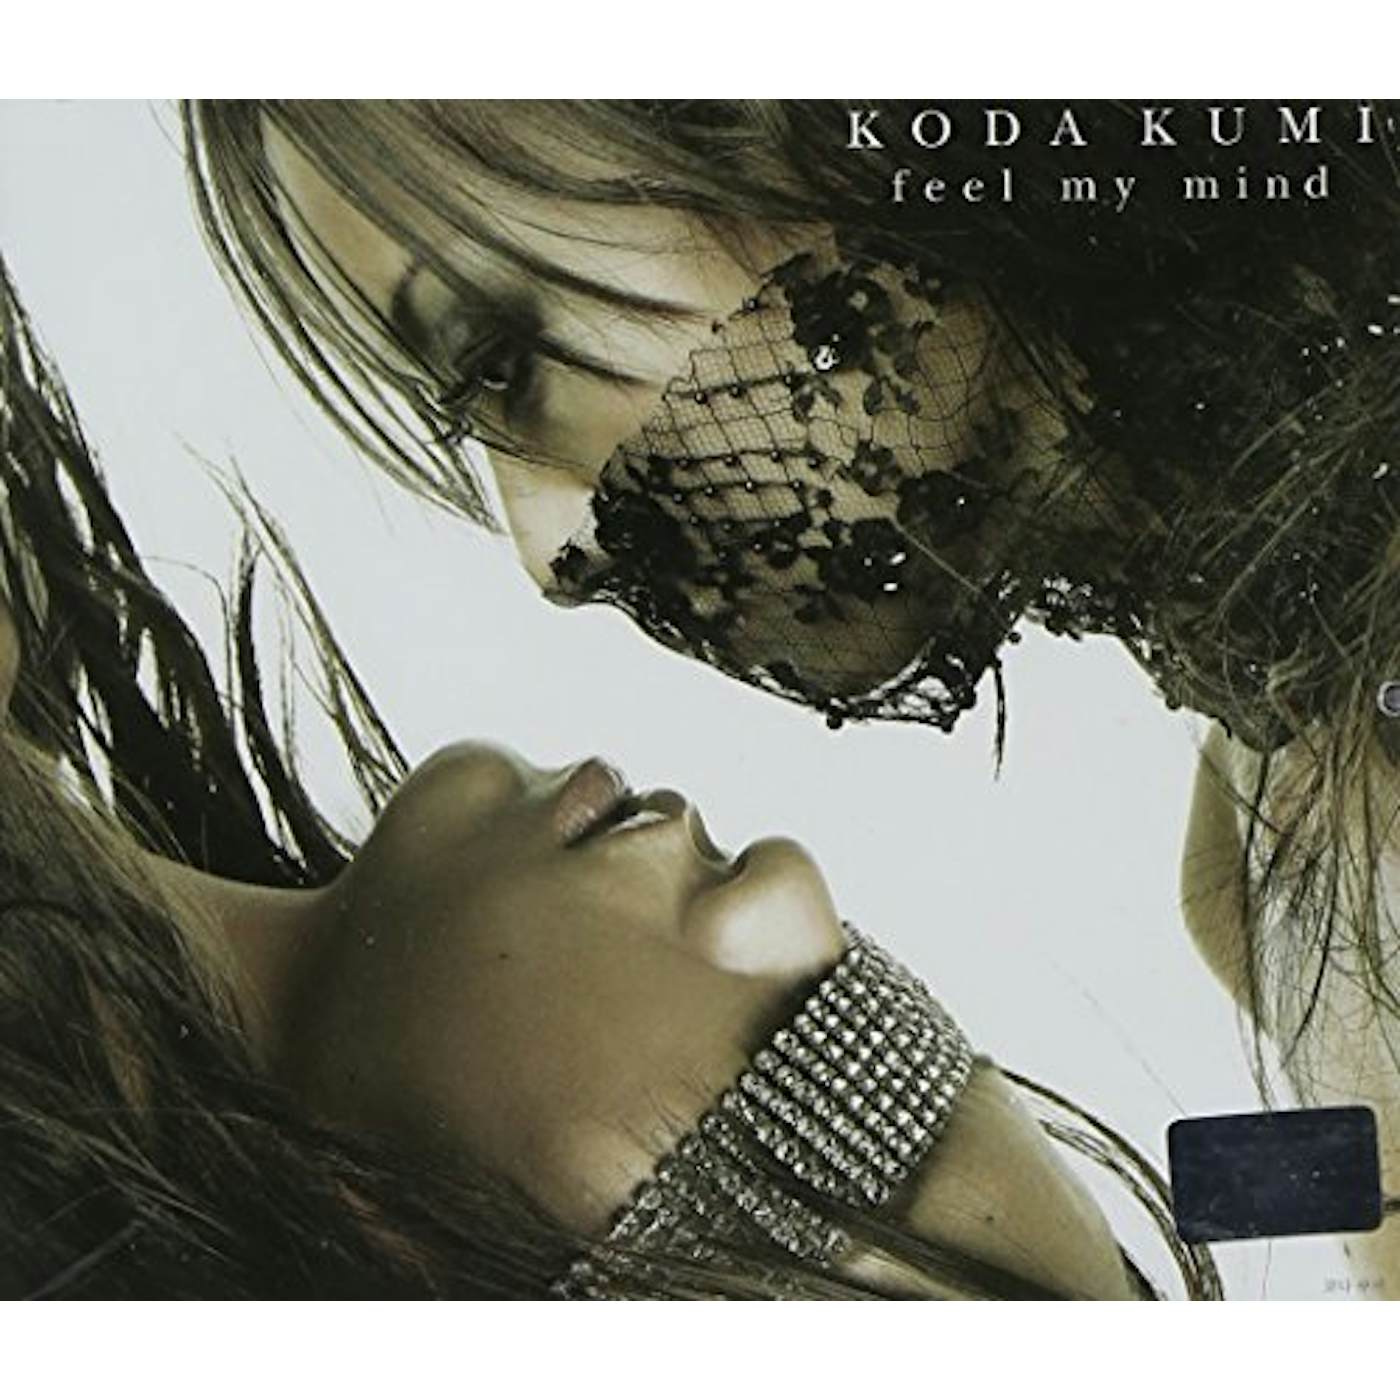 Kumi Koda FEEL MY MIND CD